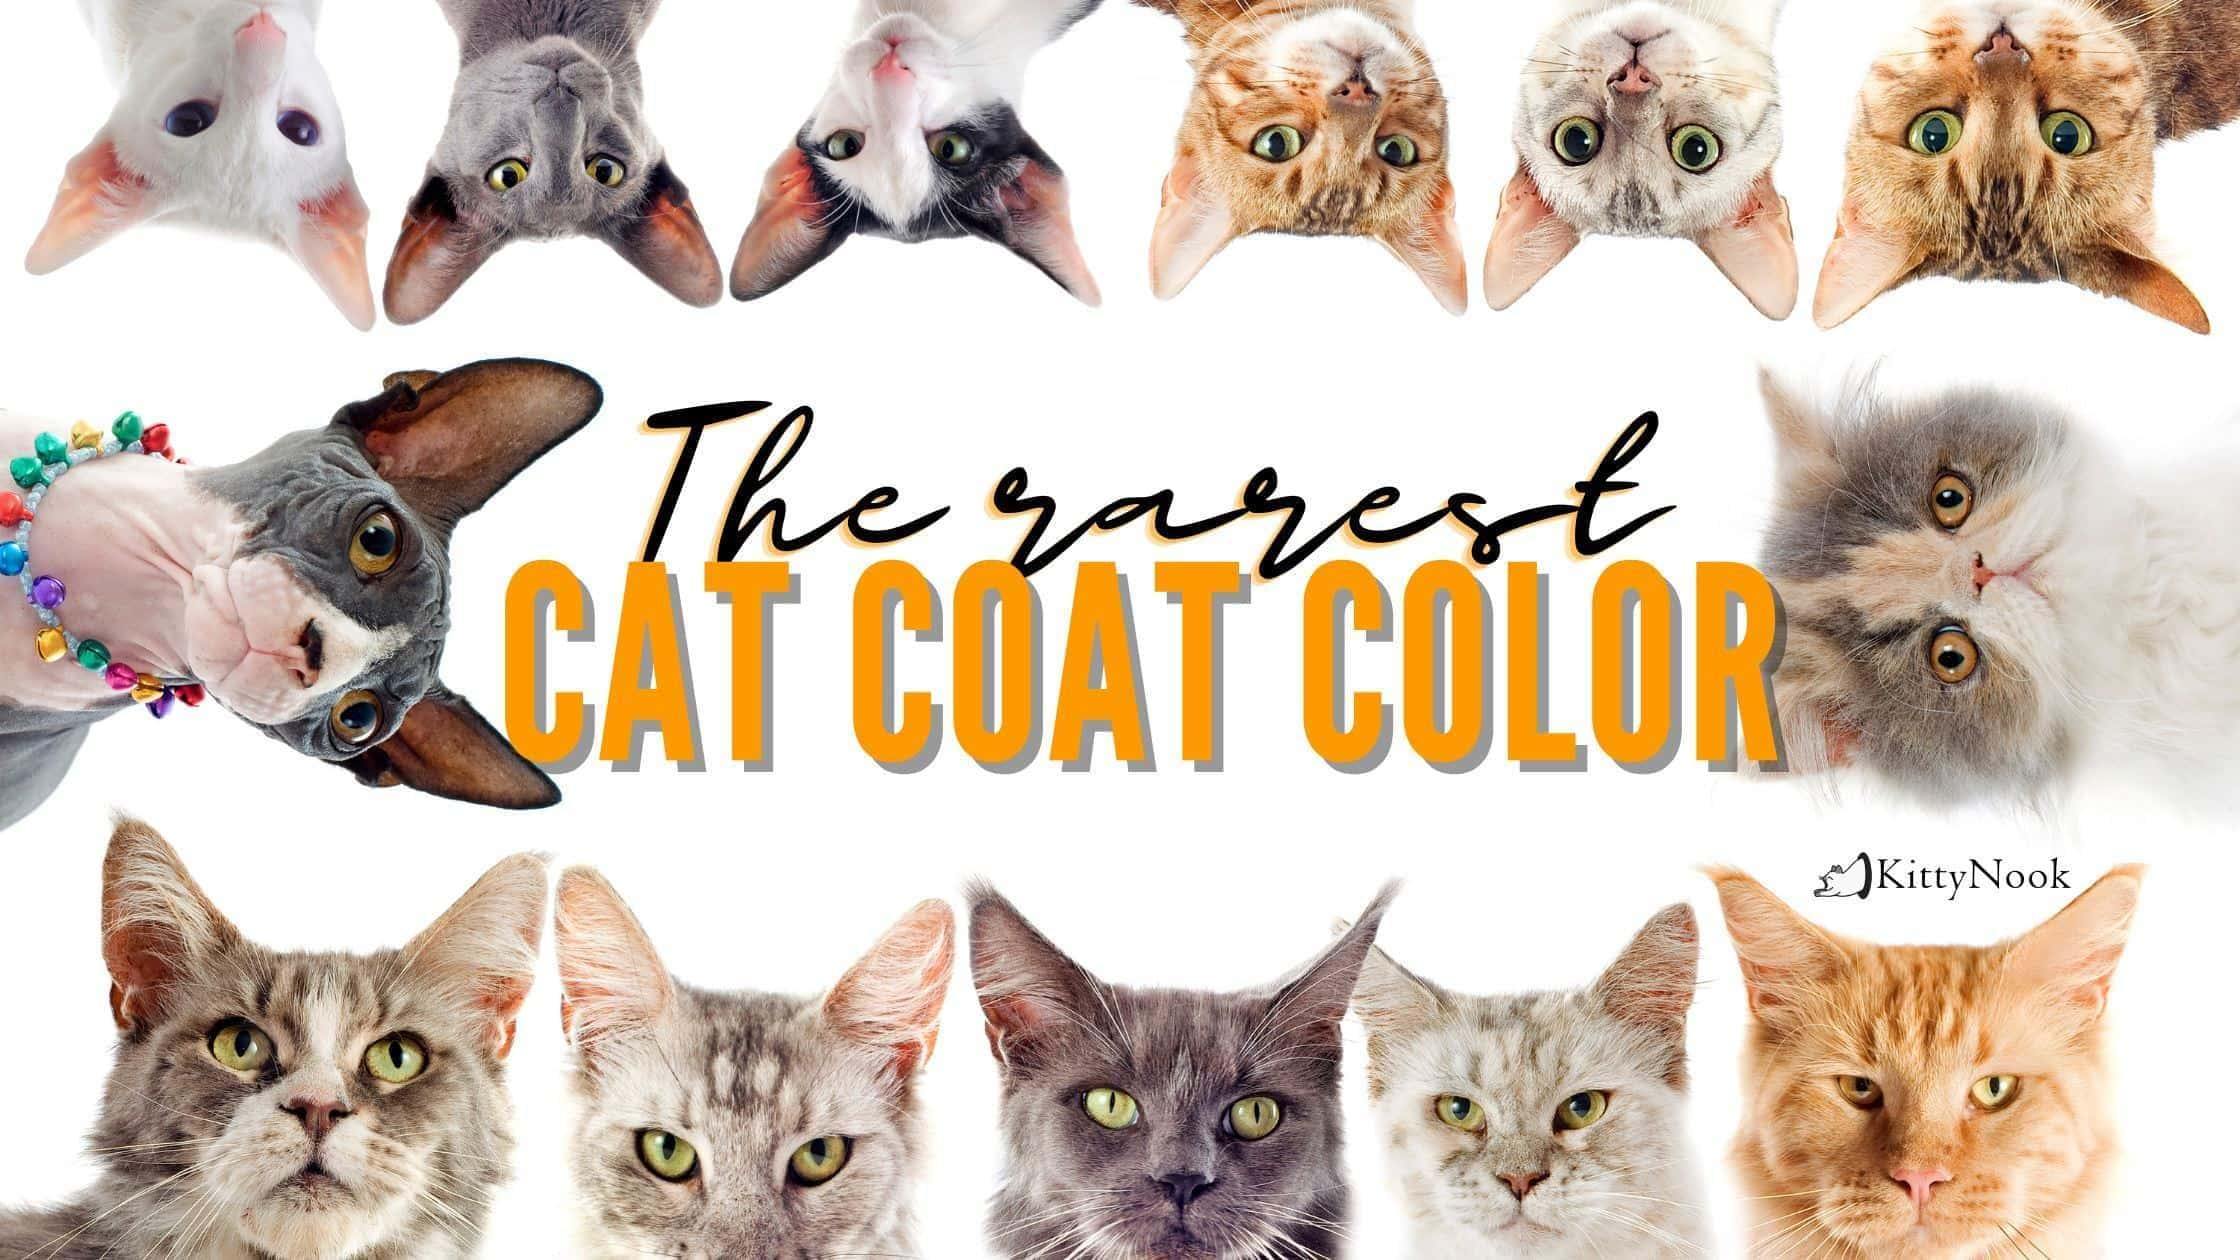 The rarest cat coats